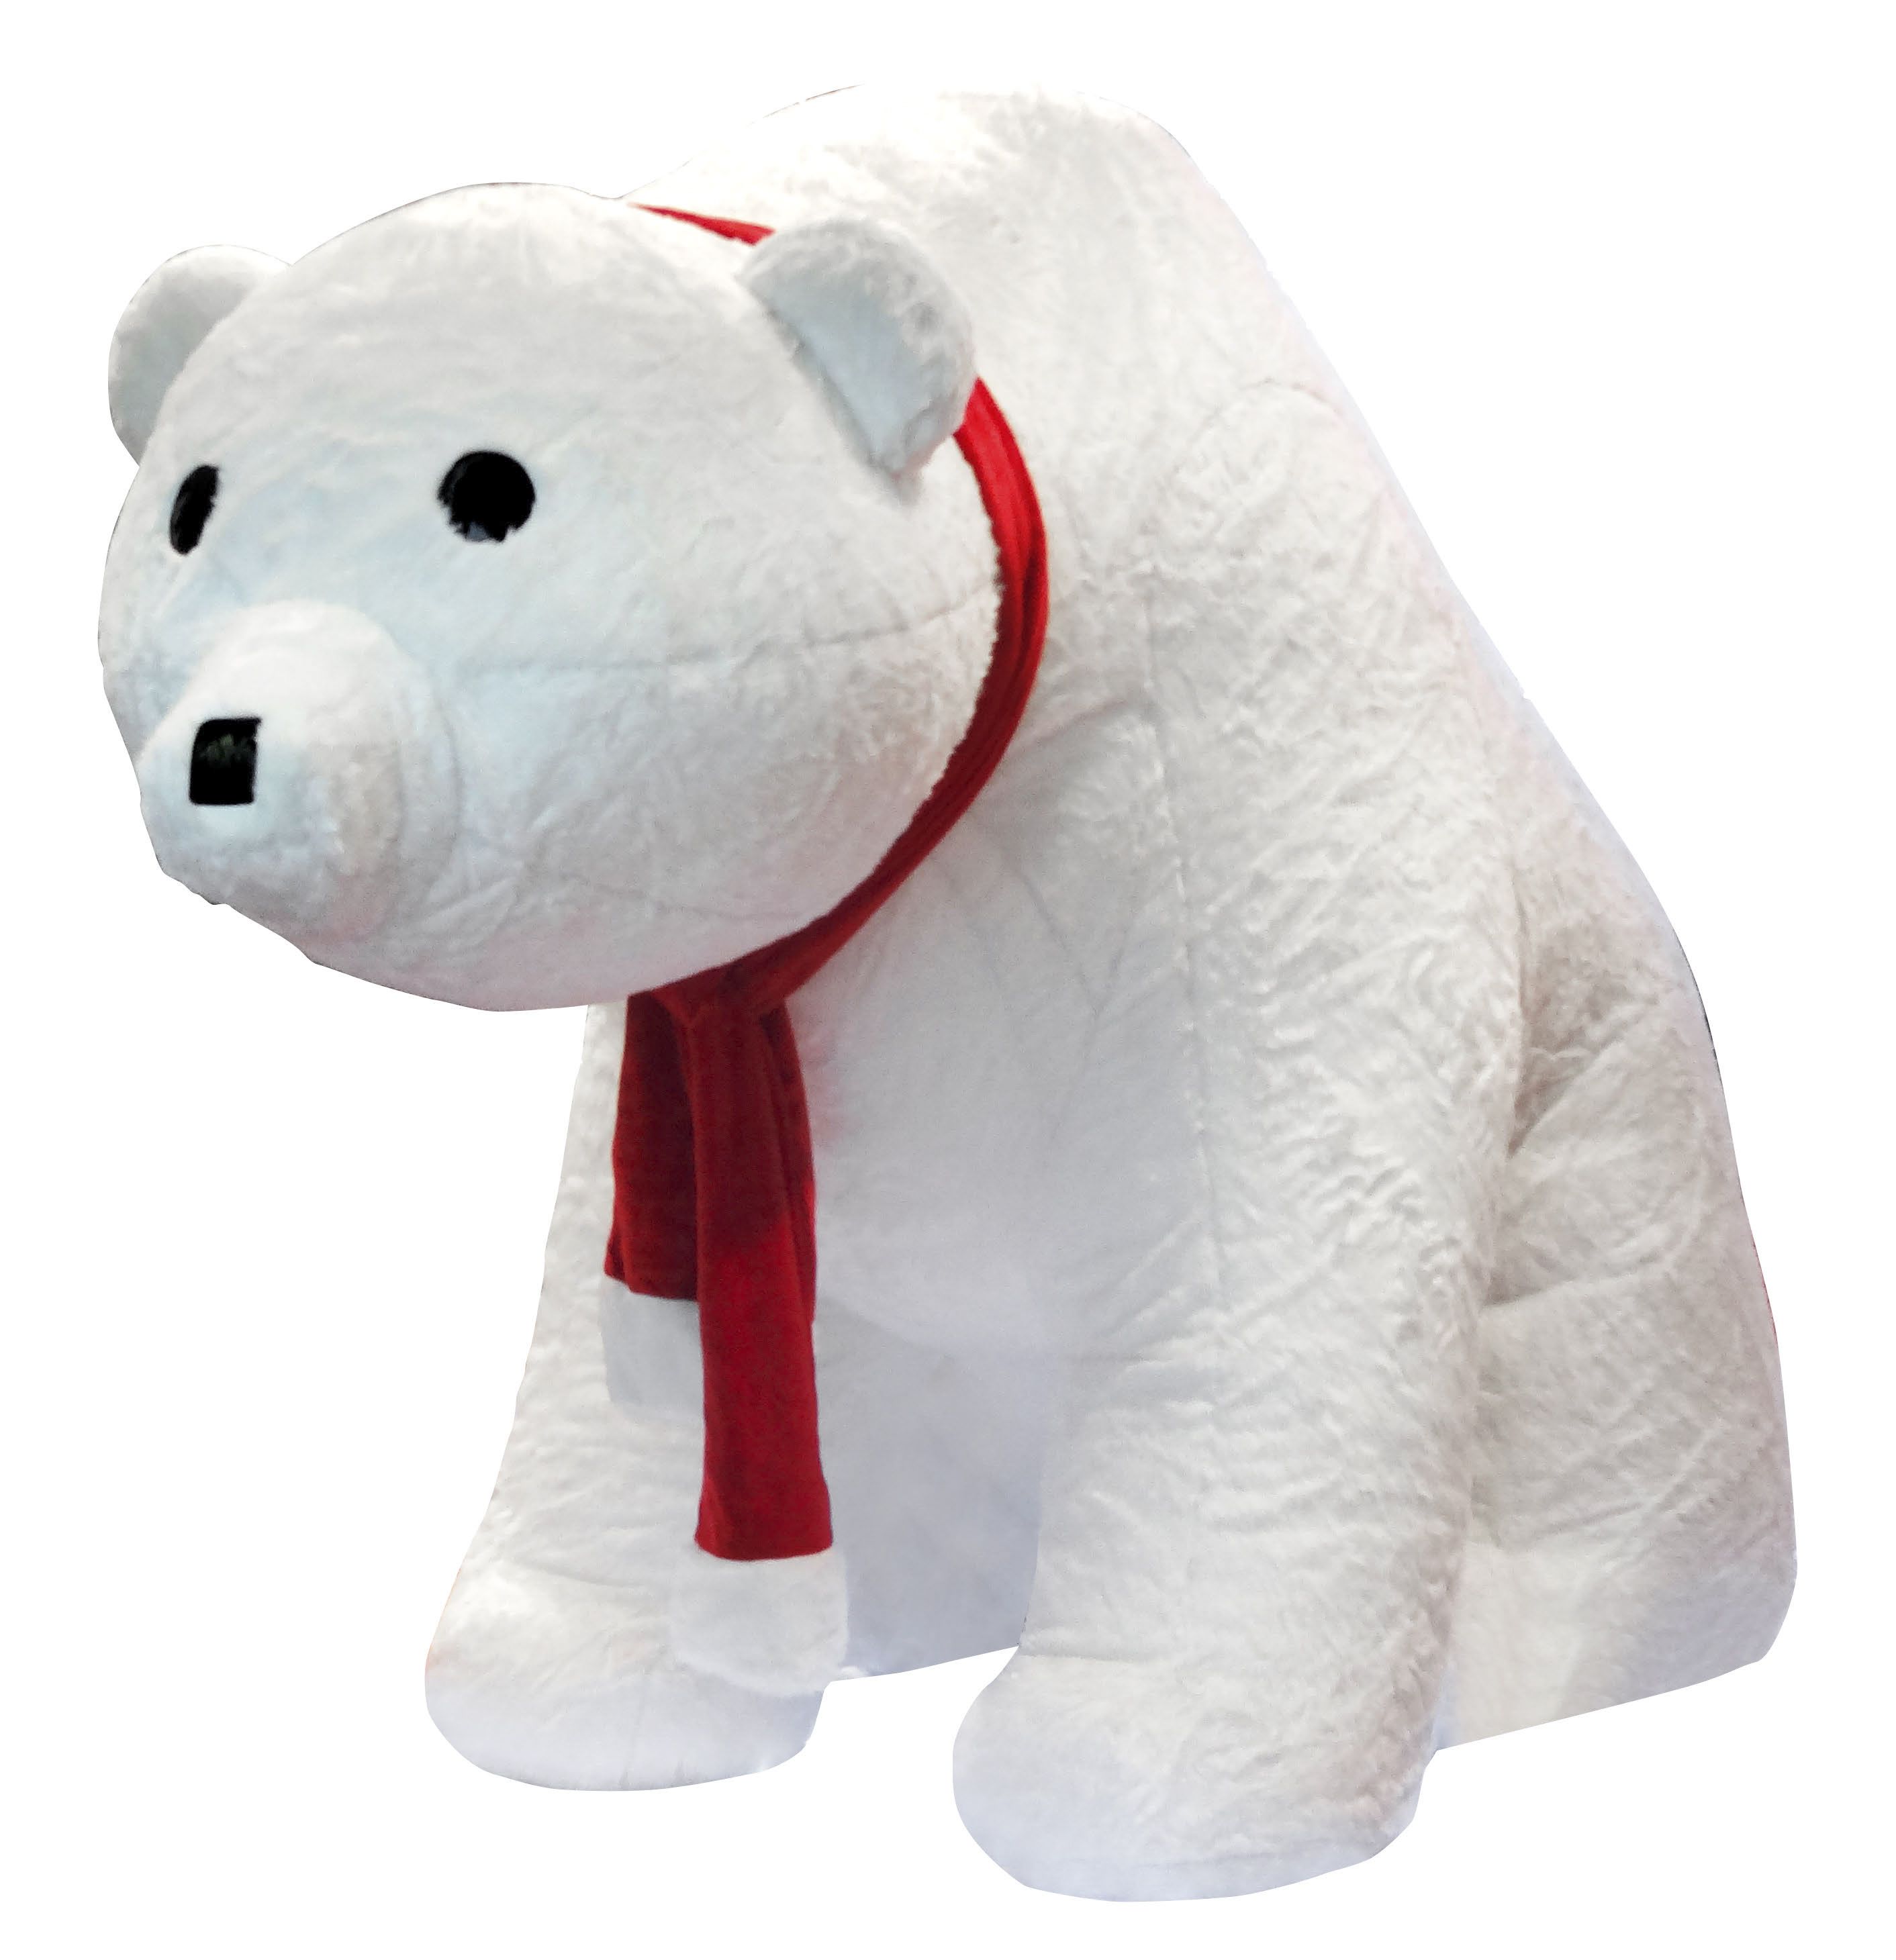 Giant Polar bear Dennis for Christmas decoration - 300x400x200cm ...